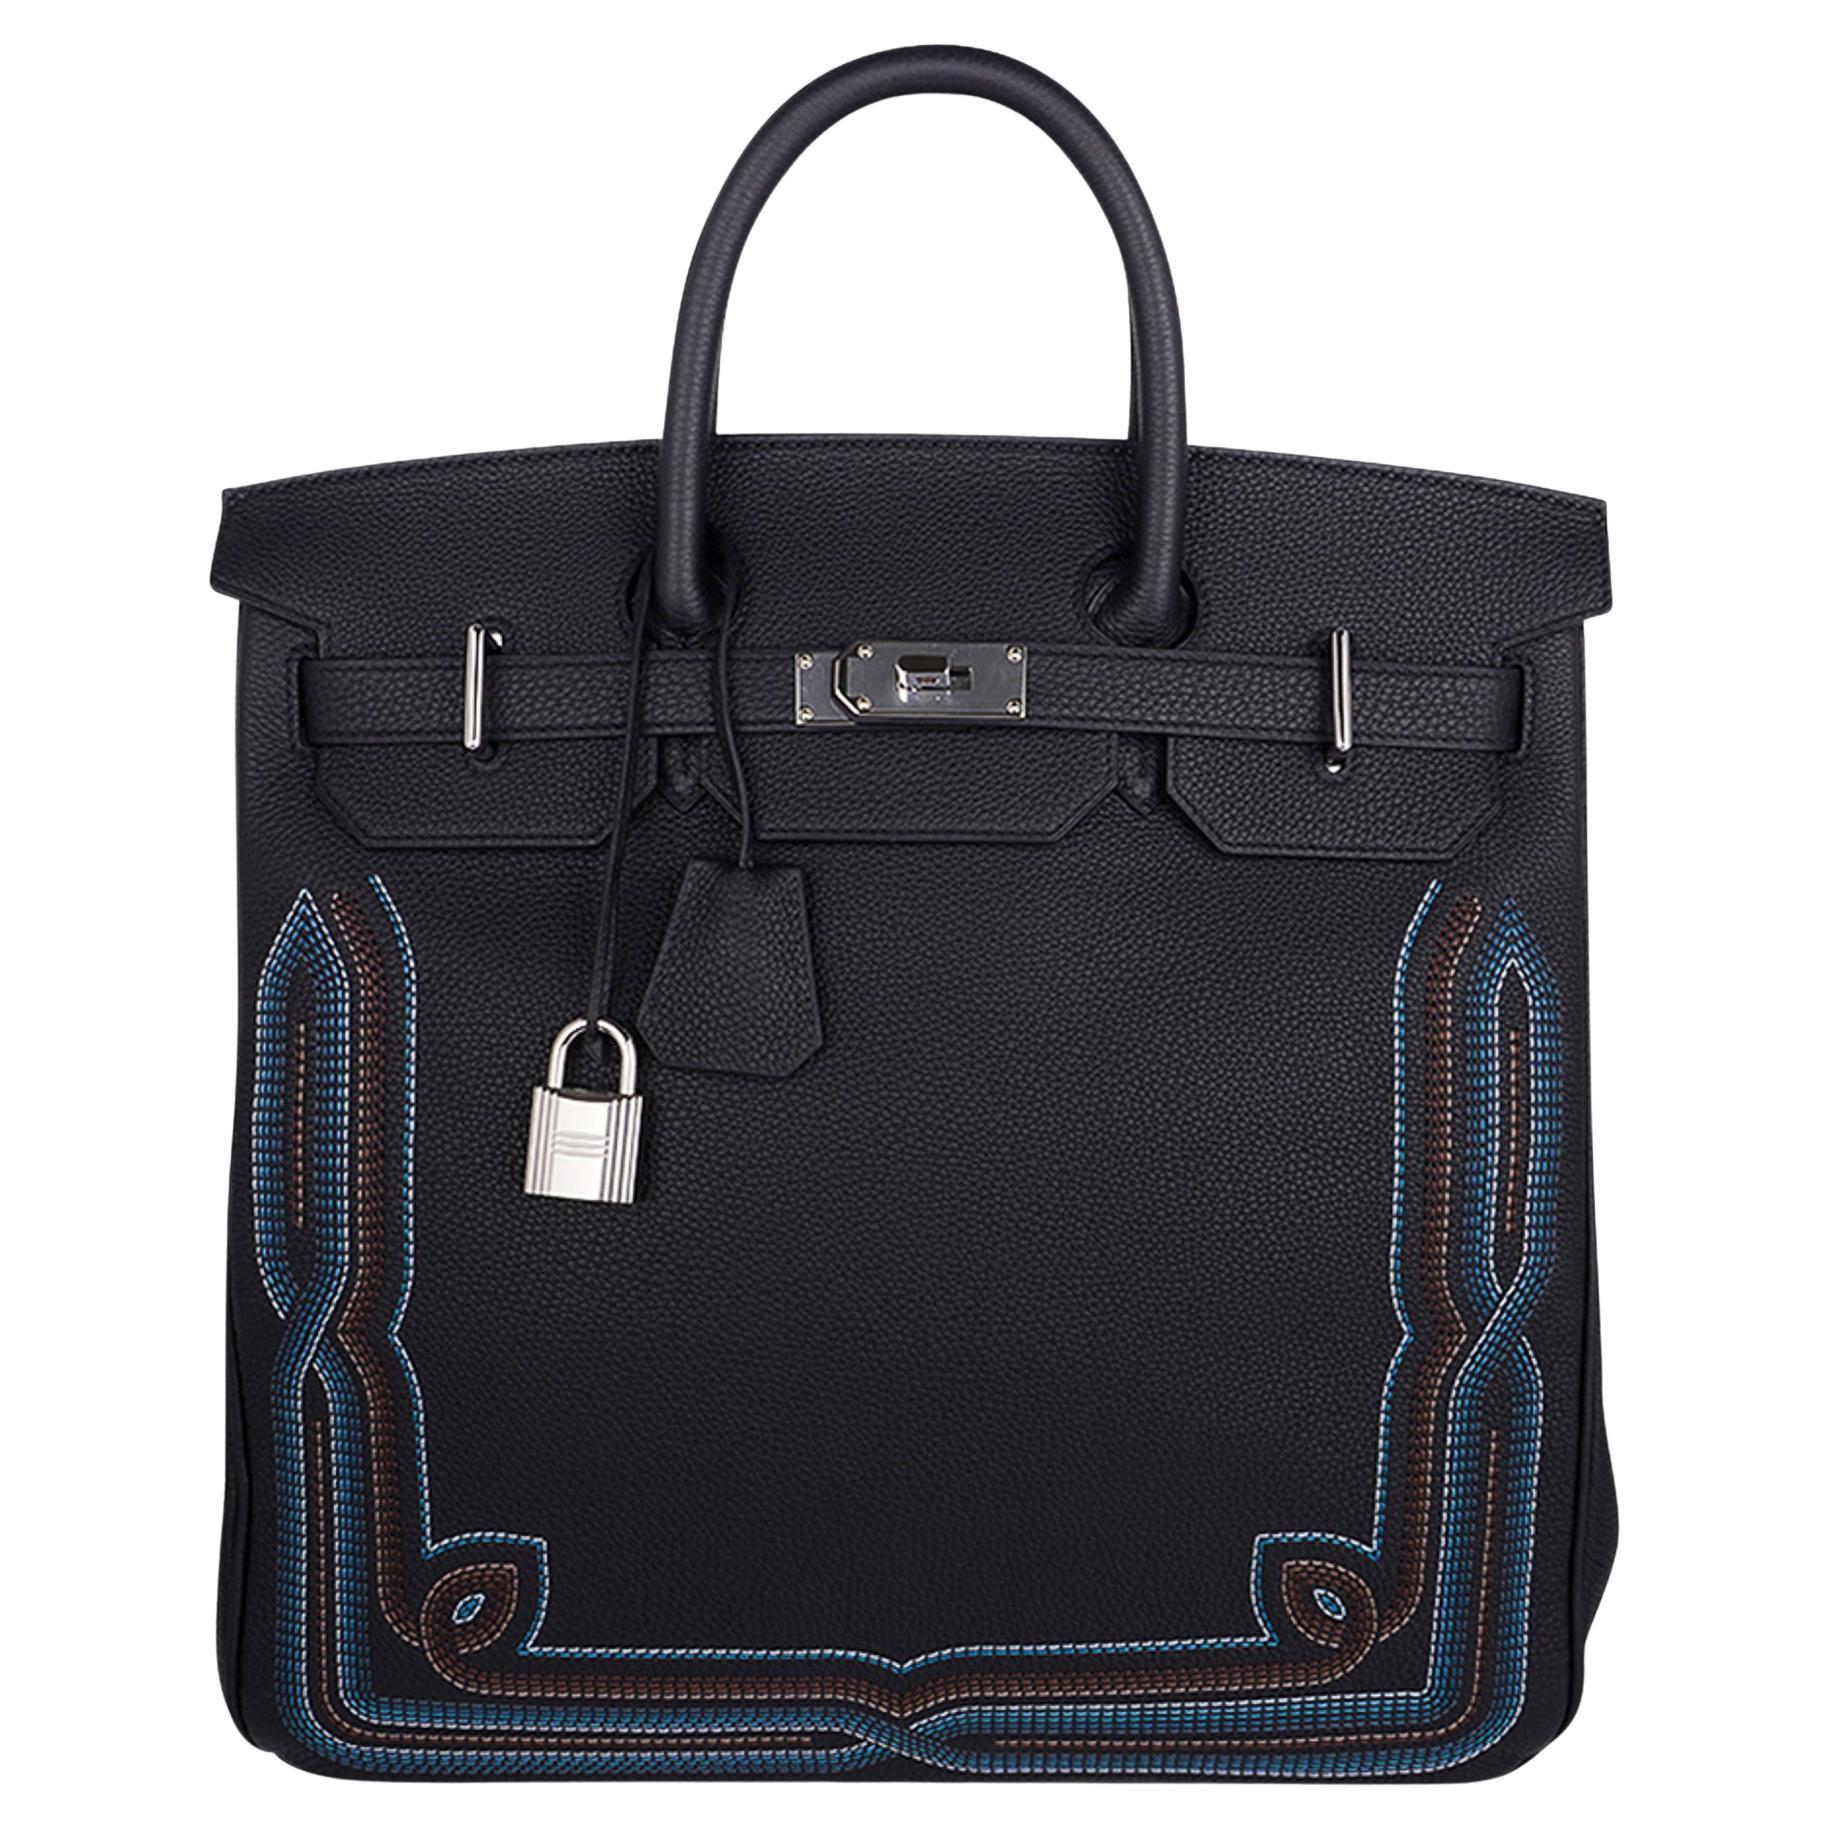 Hermes HAC 40 Birkin Men's Bag Black Runway Embroidered Limited Edition 